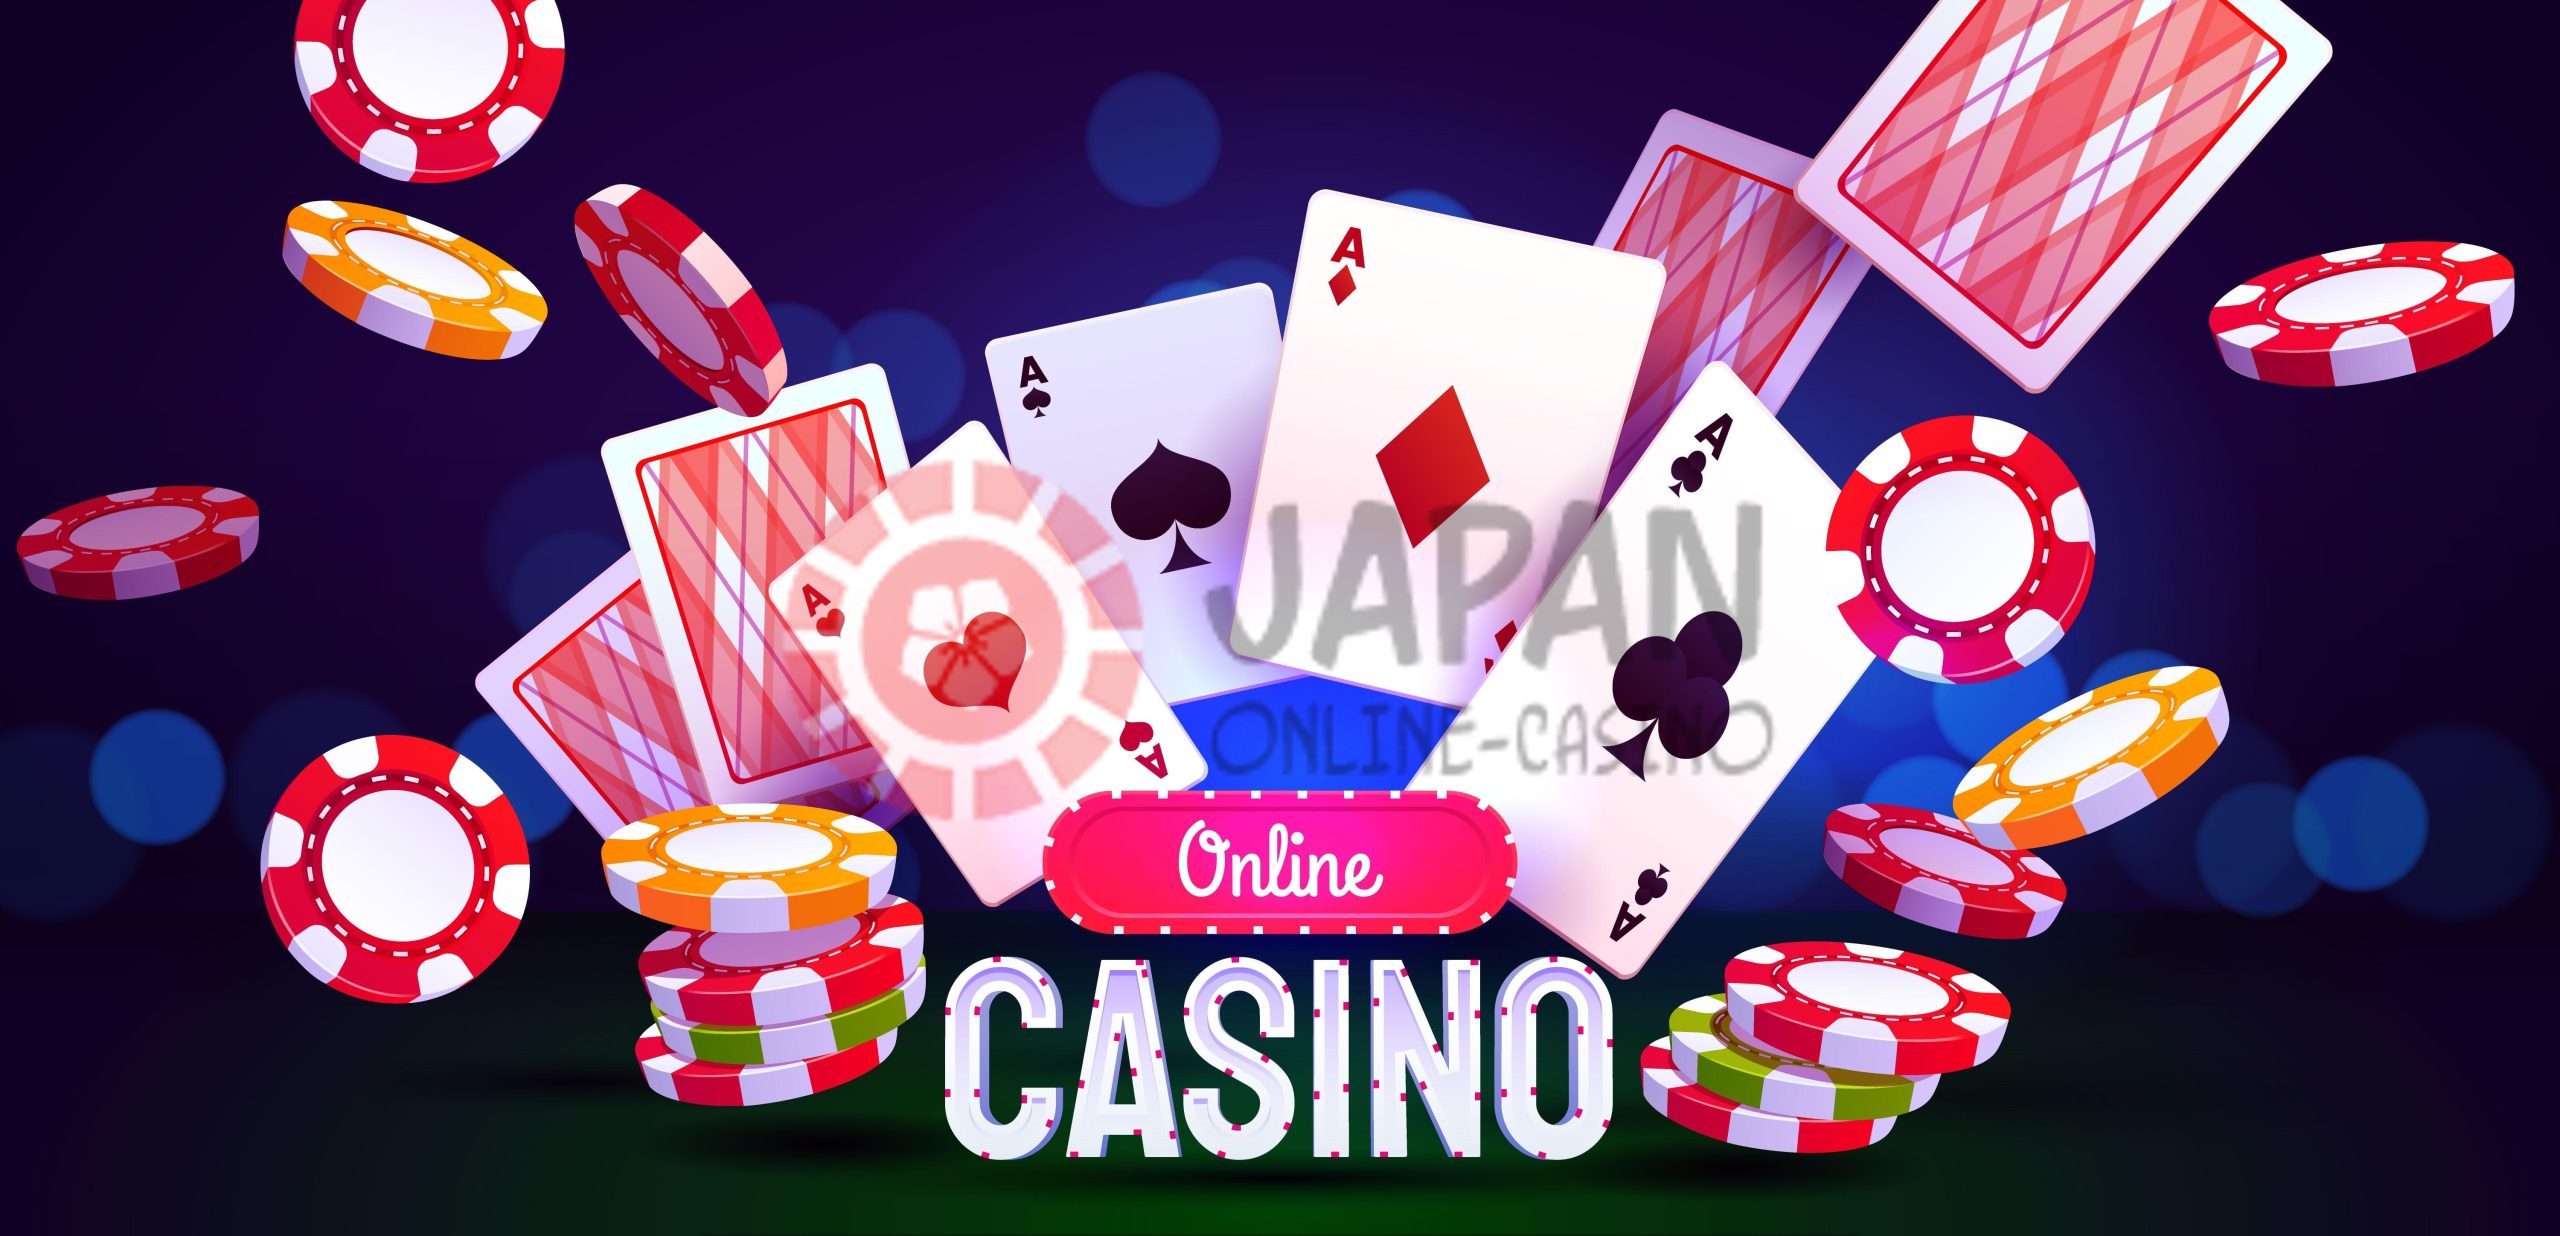 オンラインカジノオーナーの維持管理 - online casino owner